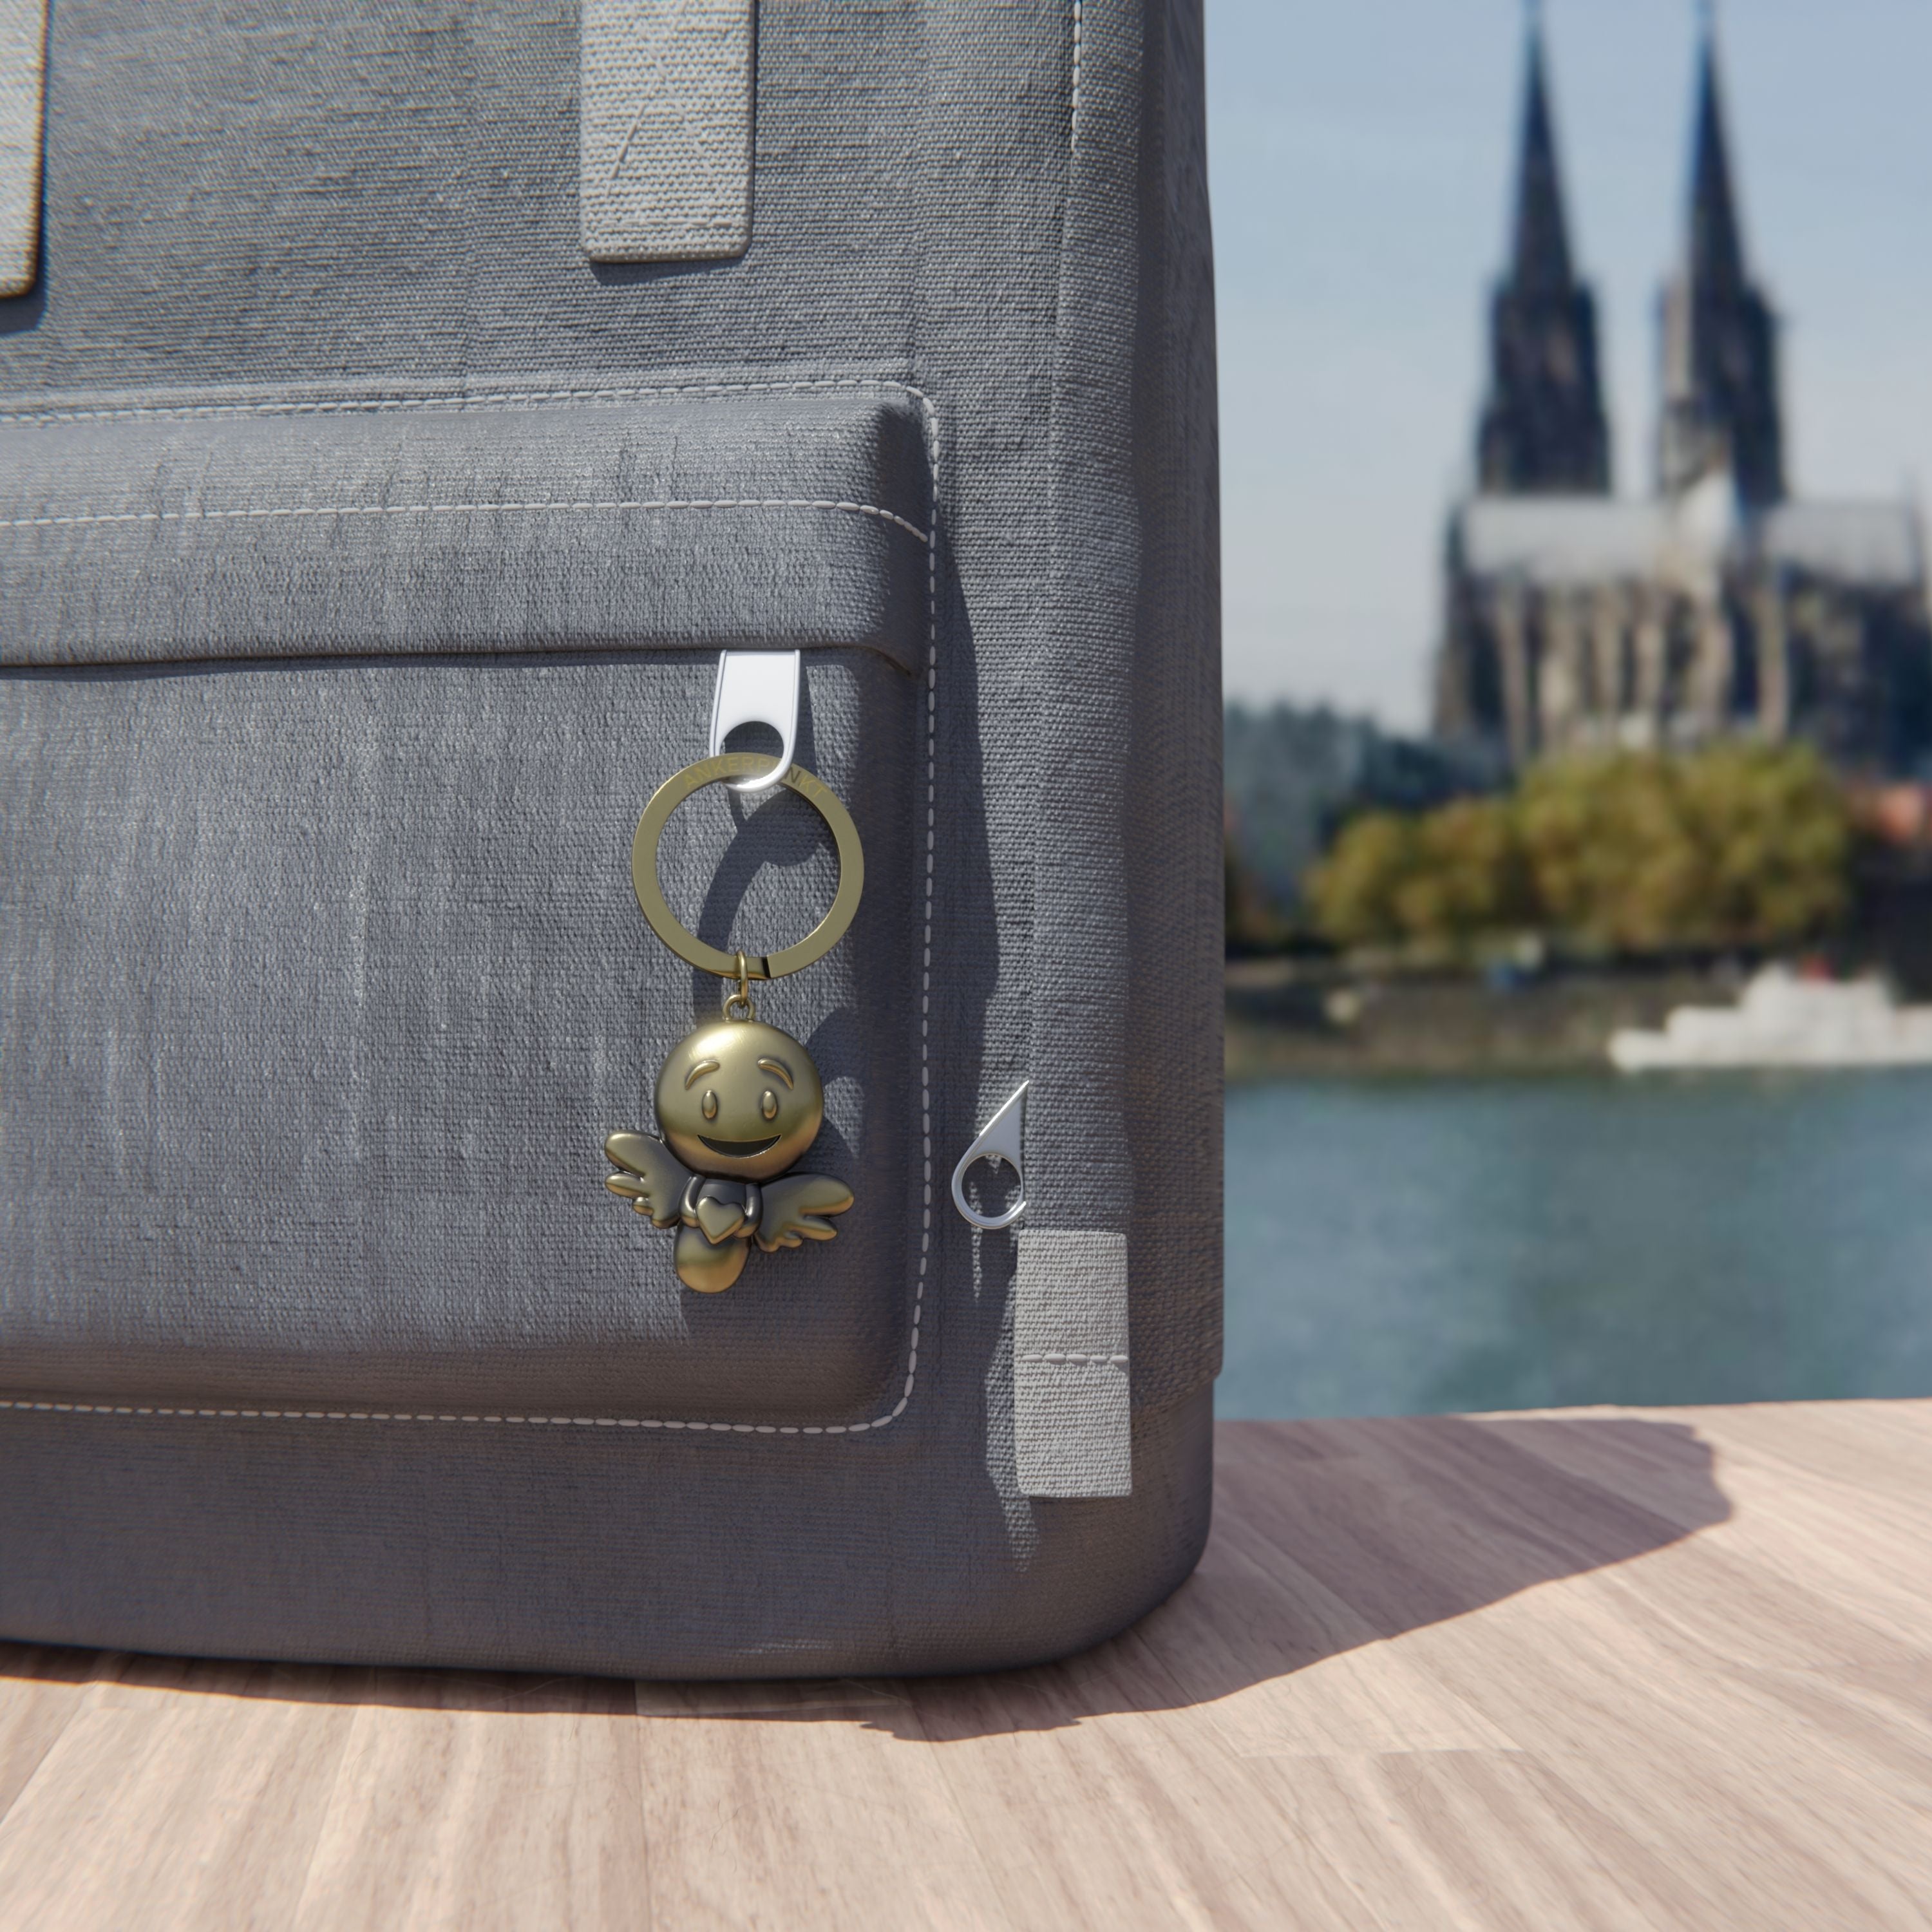 Schlüsselanhänger Lovely gold vintage am Rucksack am Rhein, im Hintergrund ist der Kölner Dom zu sehen